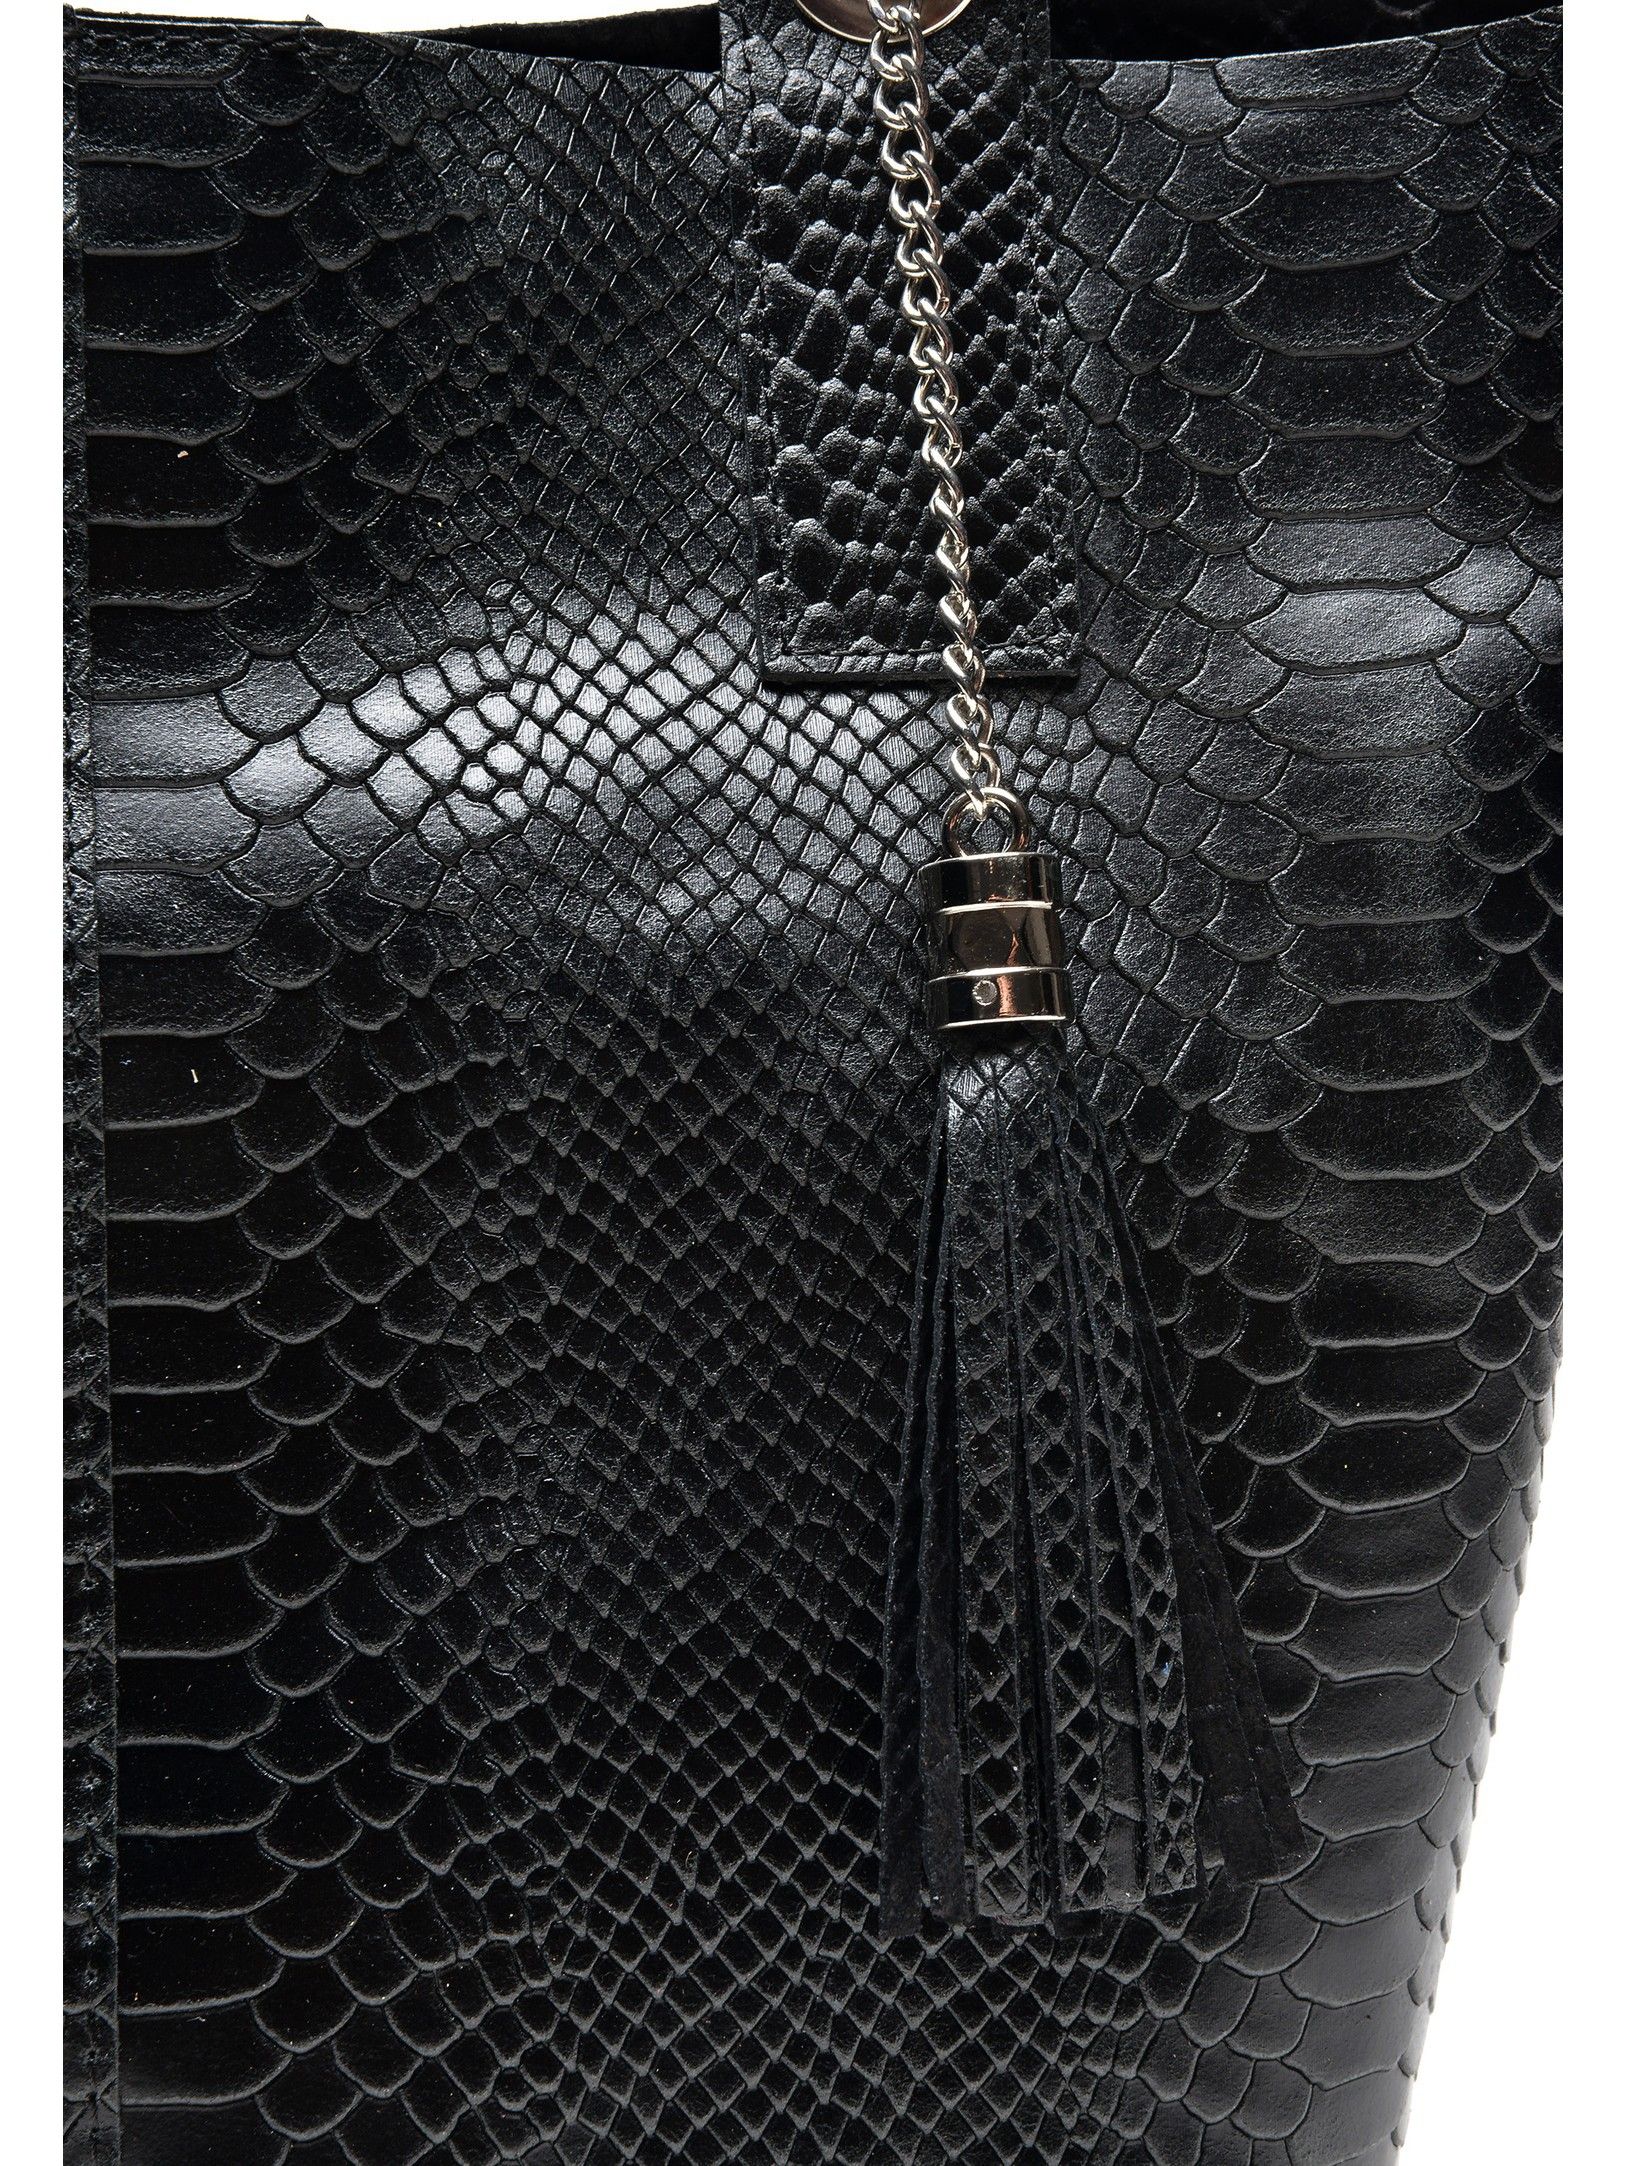 Handbag
100% cow leather
Top magnetic closure
Phone compartment
Tassel detail
Dimensions (L):34x42x19 cm
Handle: 51 cm
Shoulder strap: /